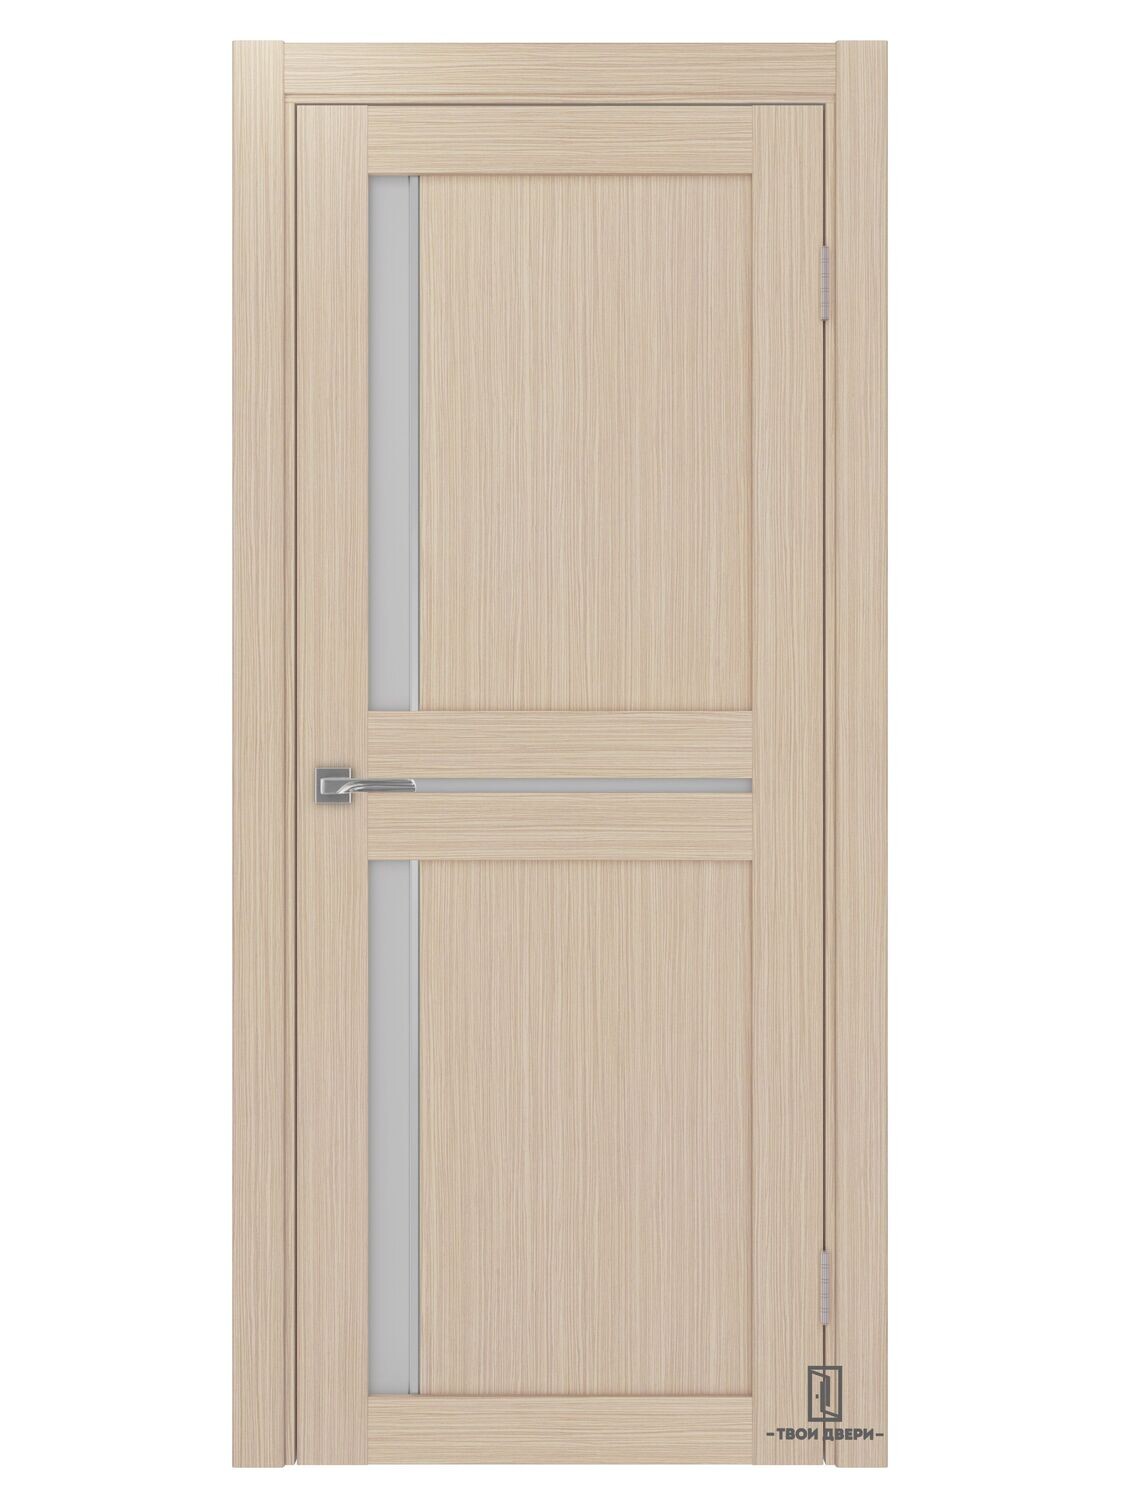 Дверь межкомнатная АПС 523.221 (молдинги), беленый дуб